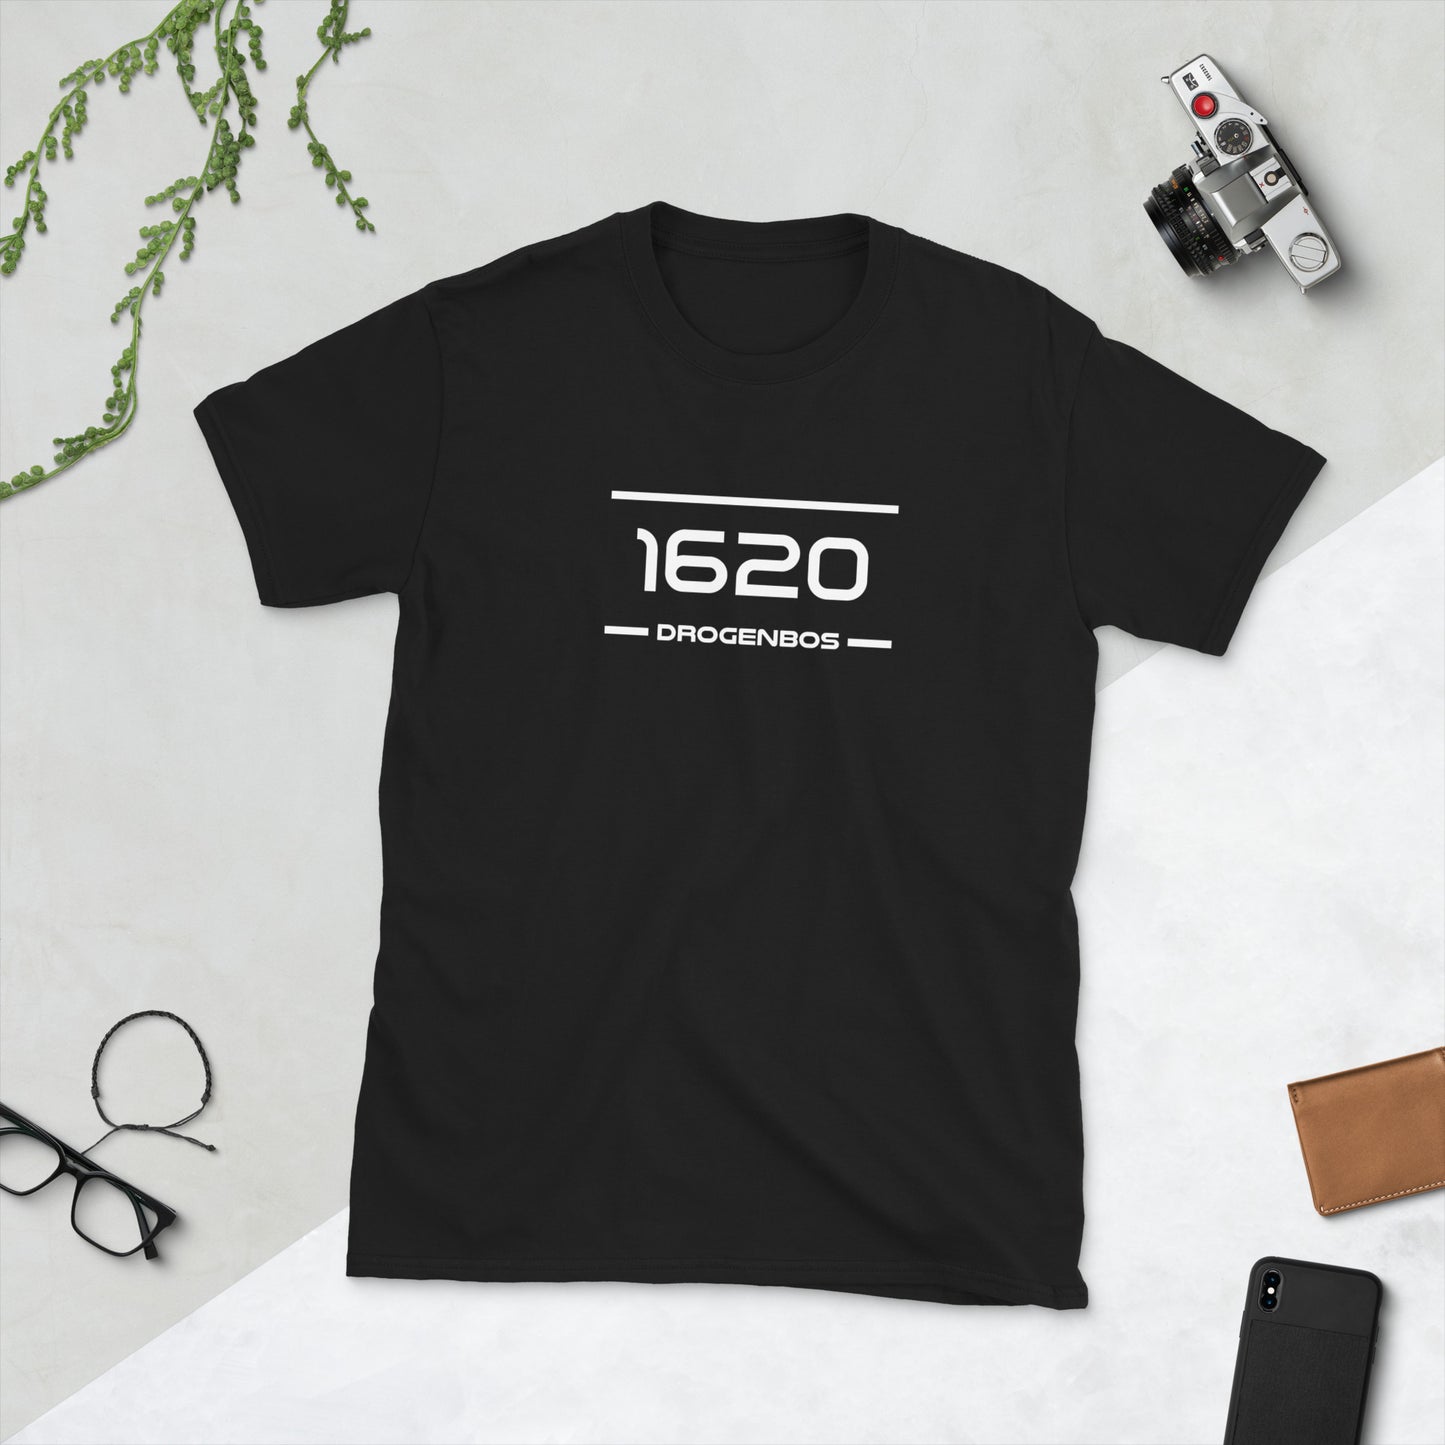 Tshirt - 1620 - Drogenbos